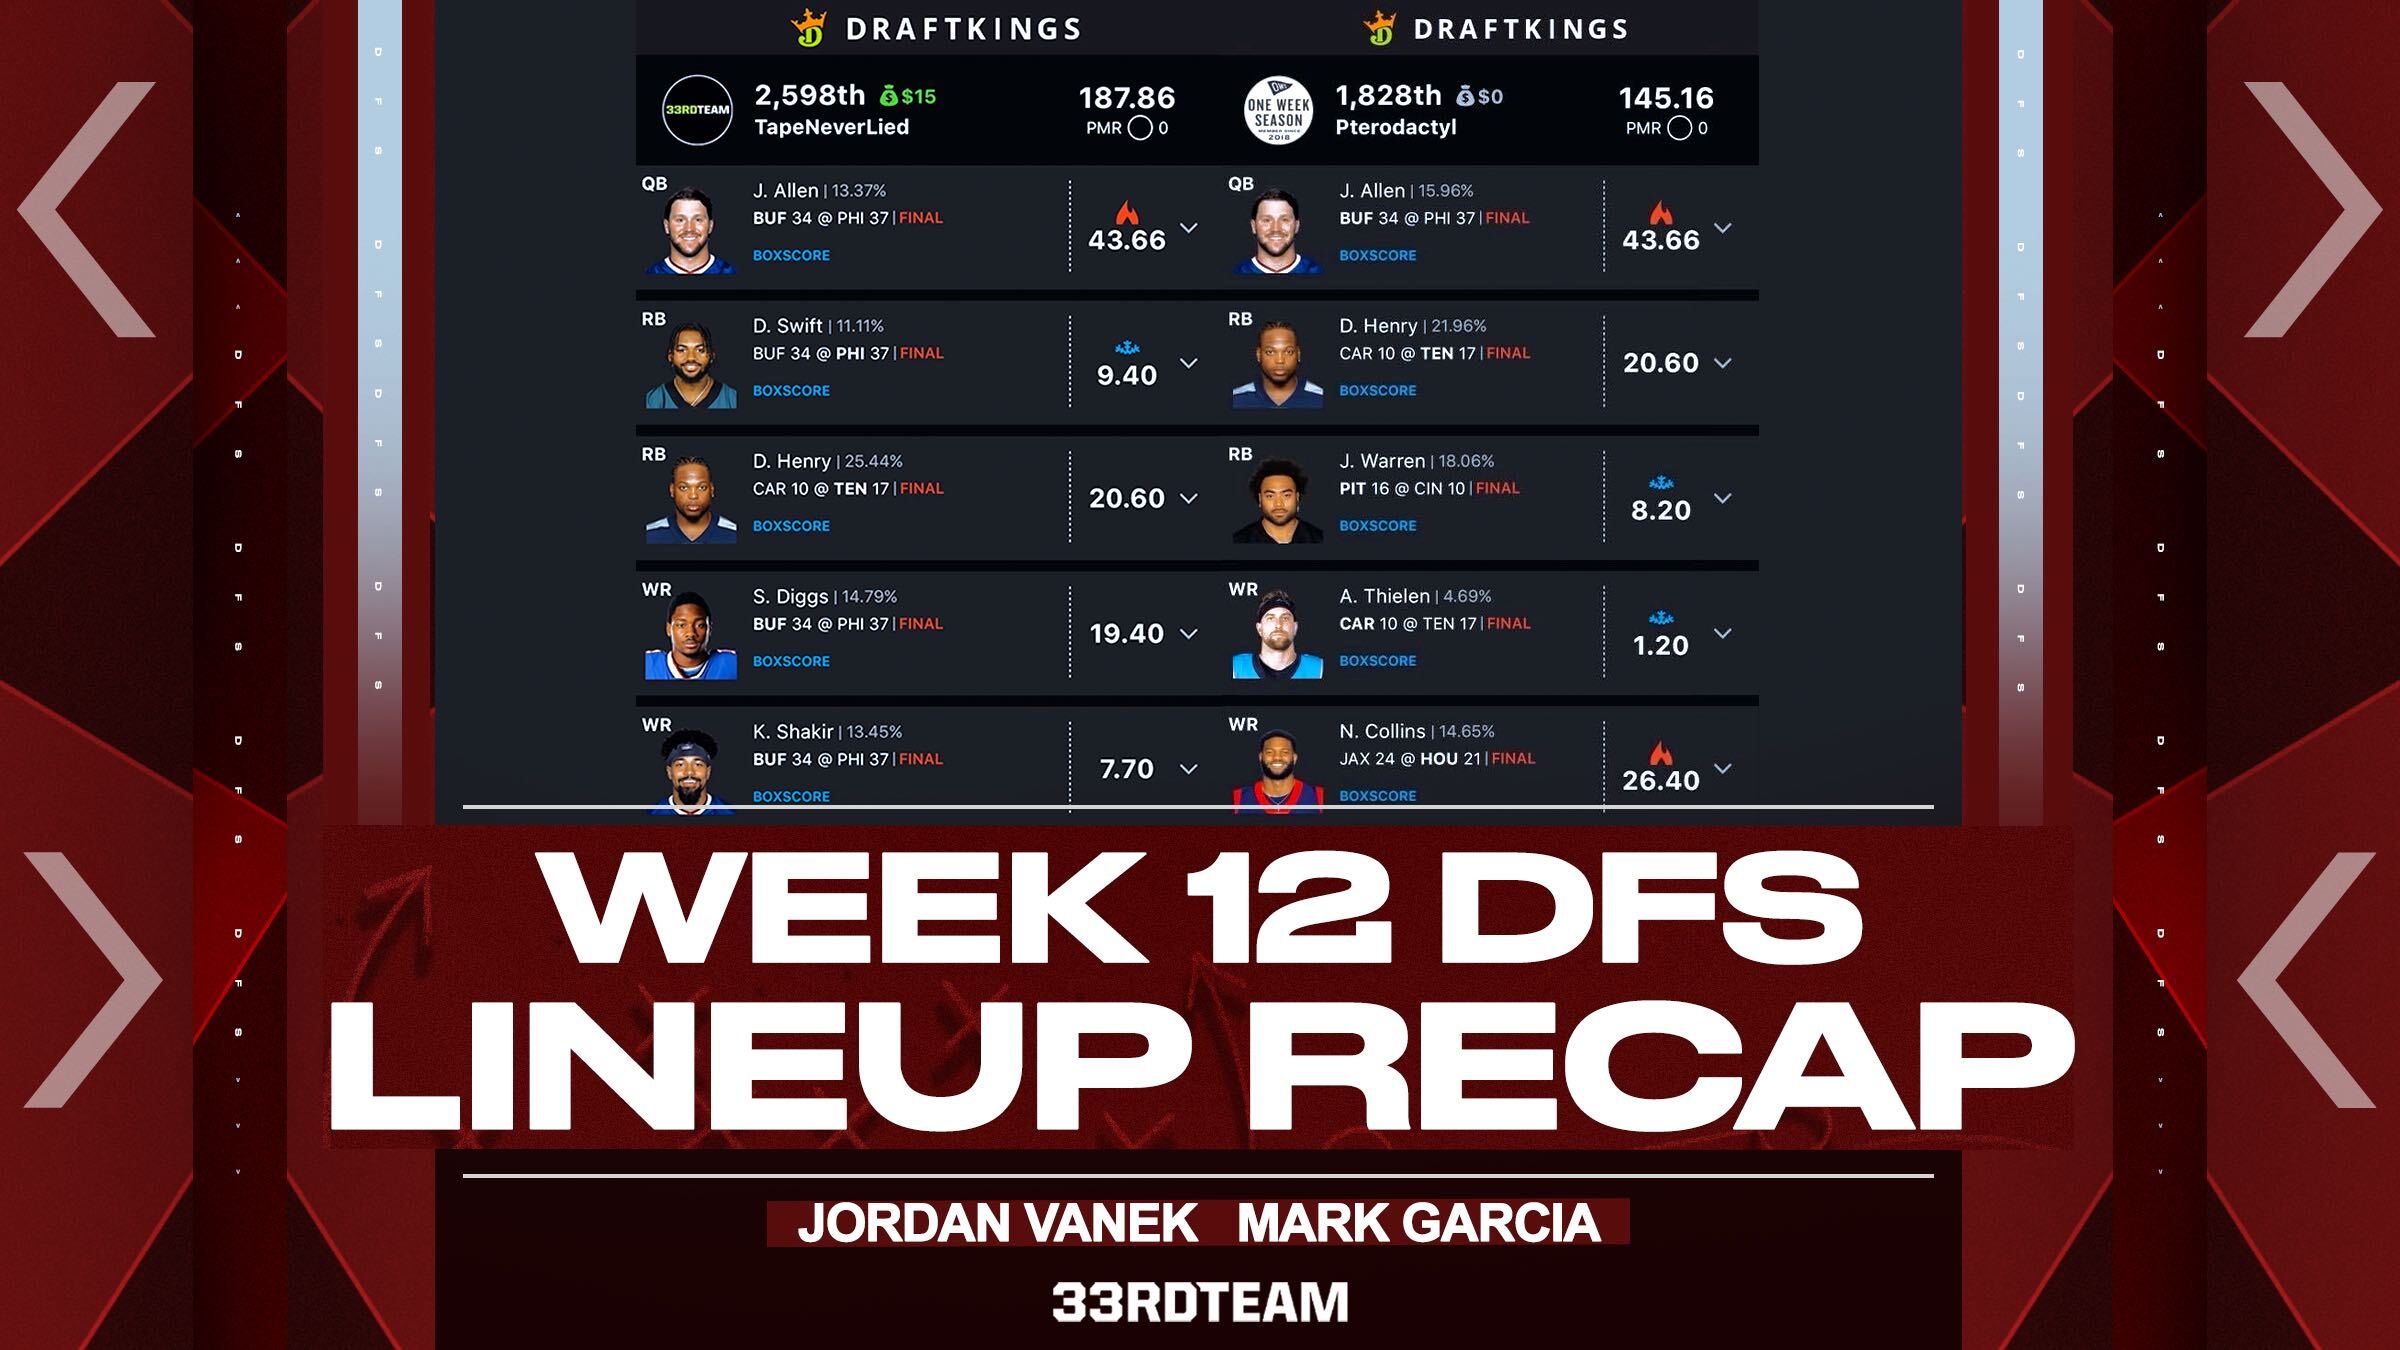 DFS week 12 recap